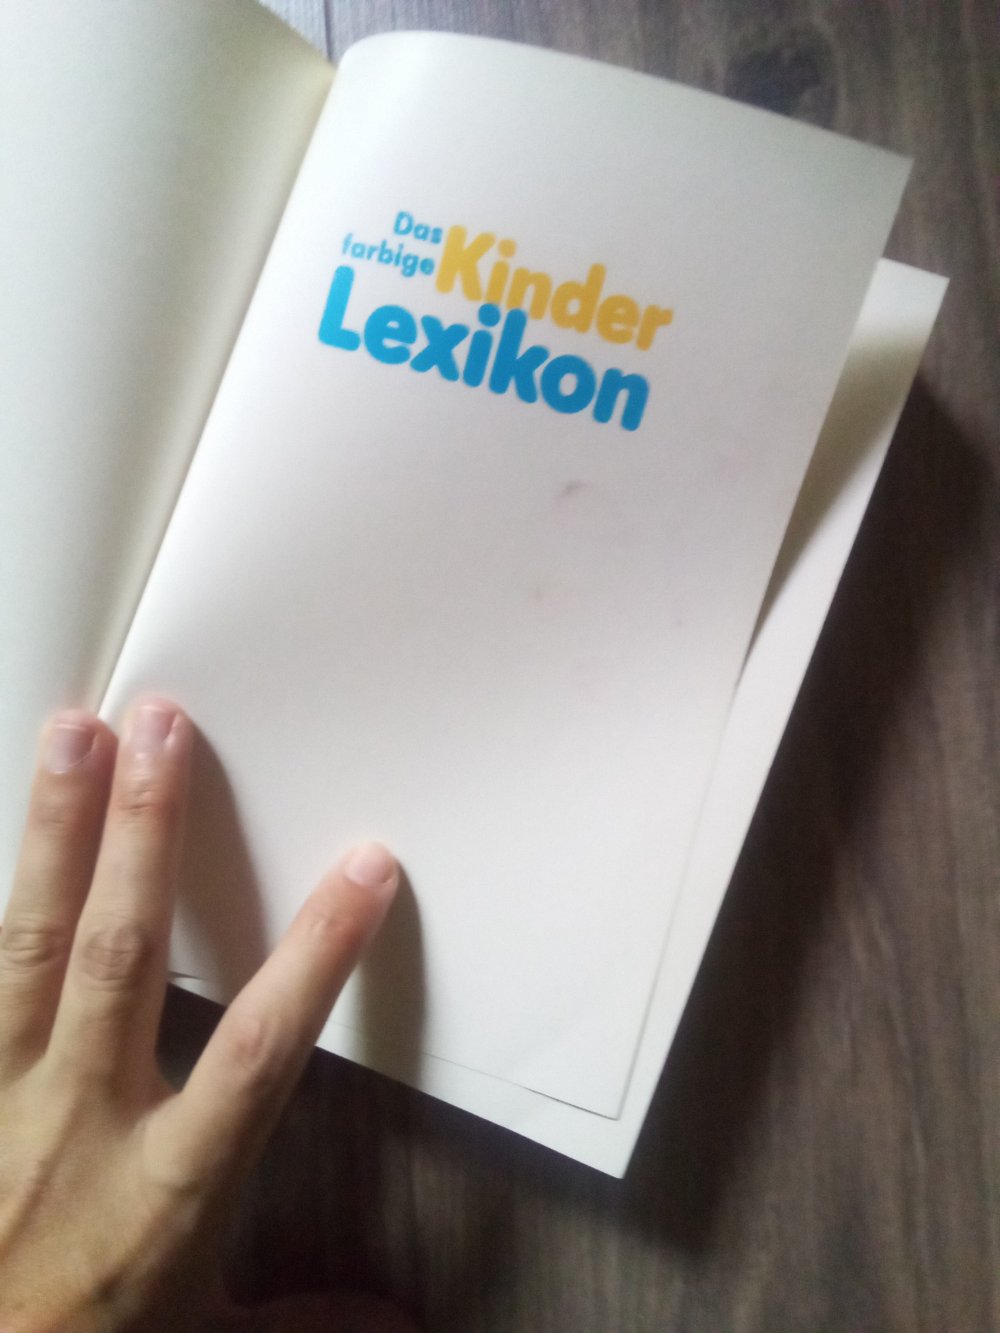 Das farbige Kinderlexikon Buch gebunden 1987